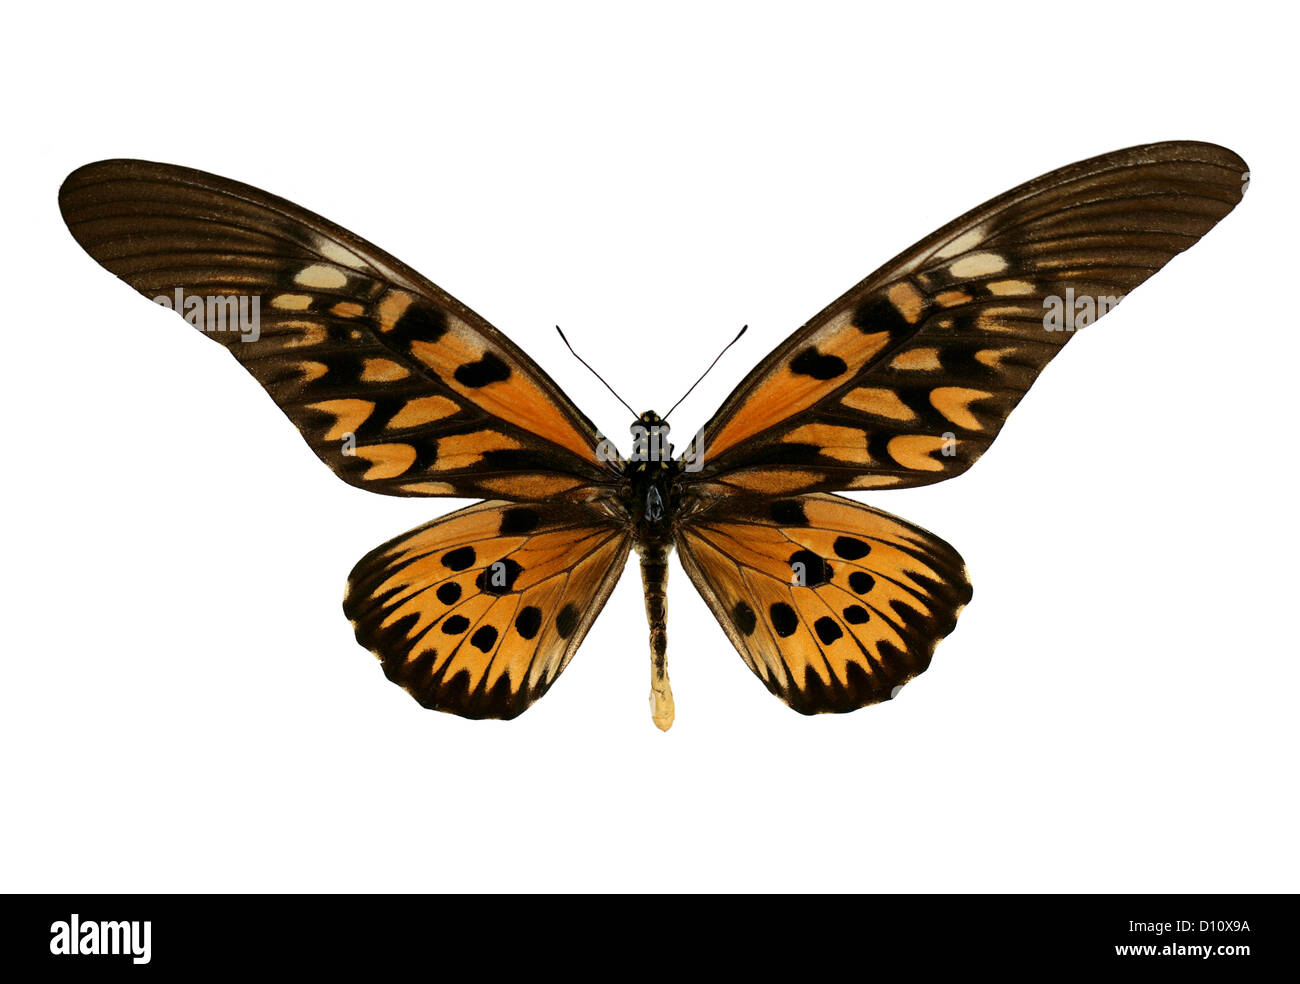 Riesige afrikanische Schwalbenschwanz Schmetterling, Papilio Antimachus, Papilionidae. Afrika. Stockfoto